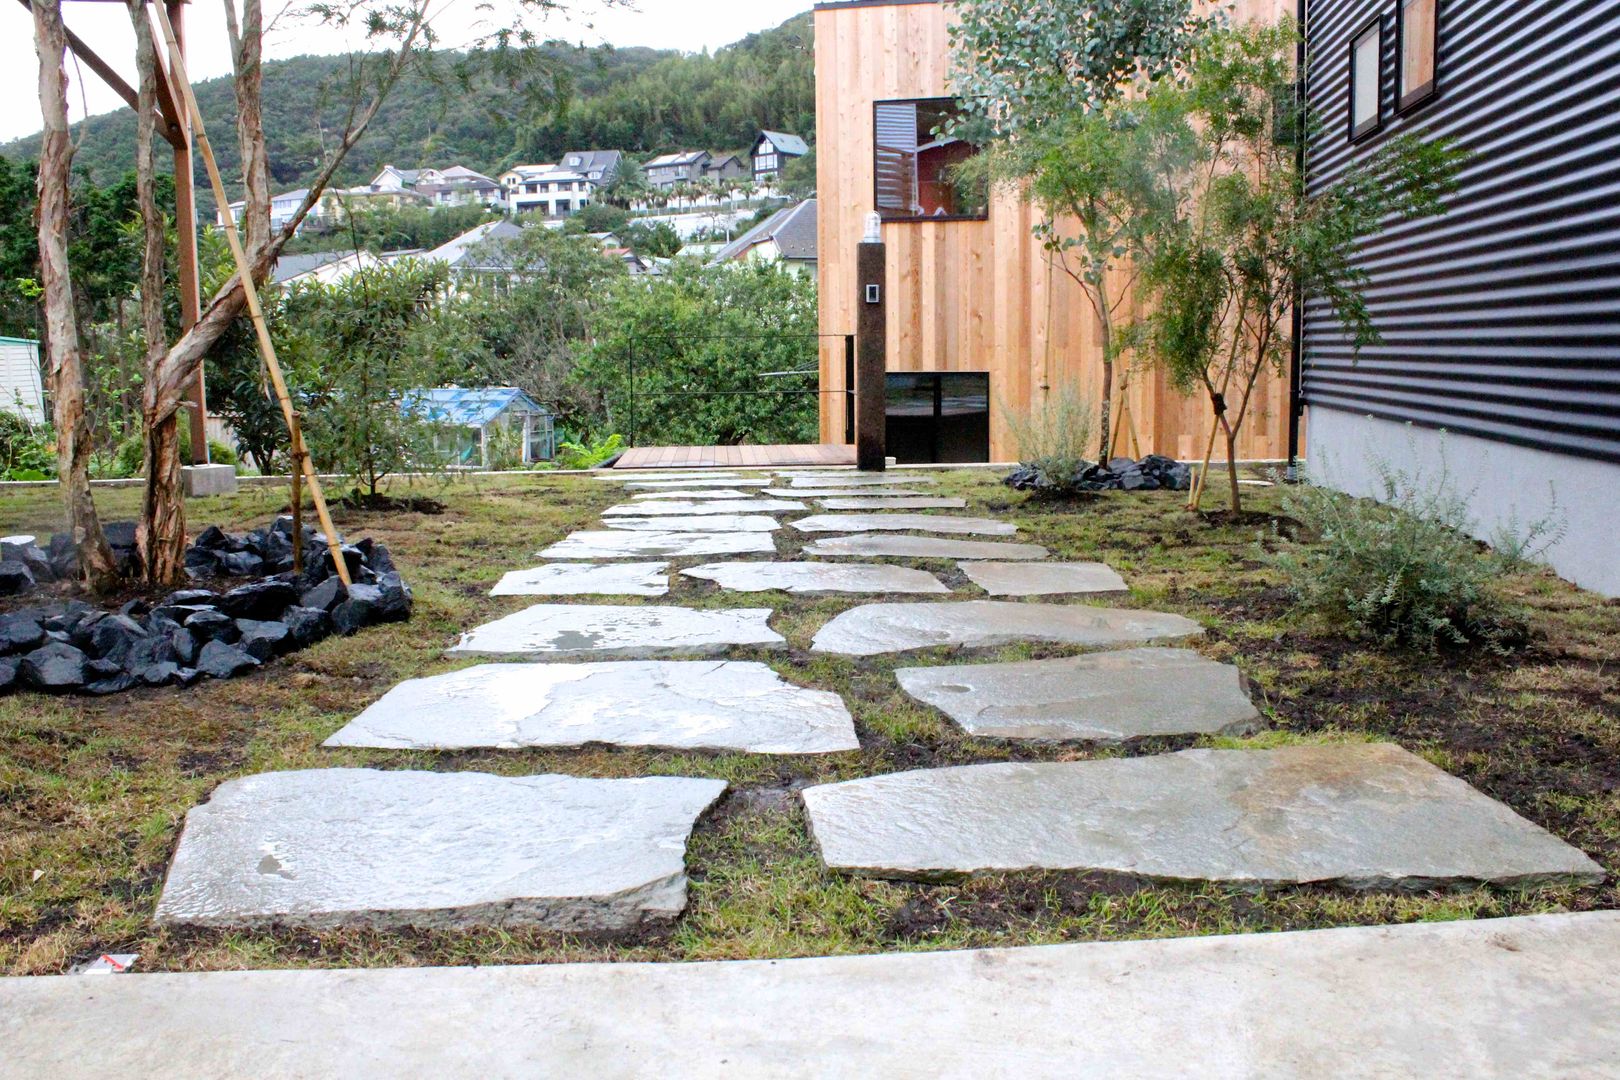 長柄の庭, Shikinowa Design Shikinowa Design Jardines de estilo moderno